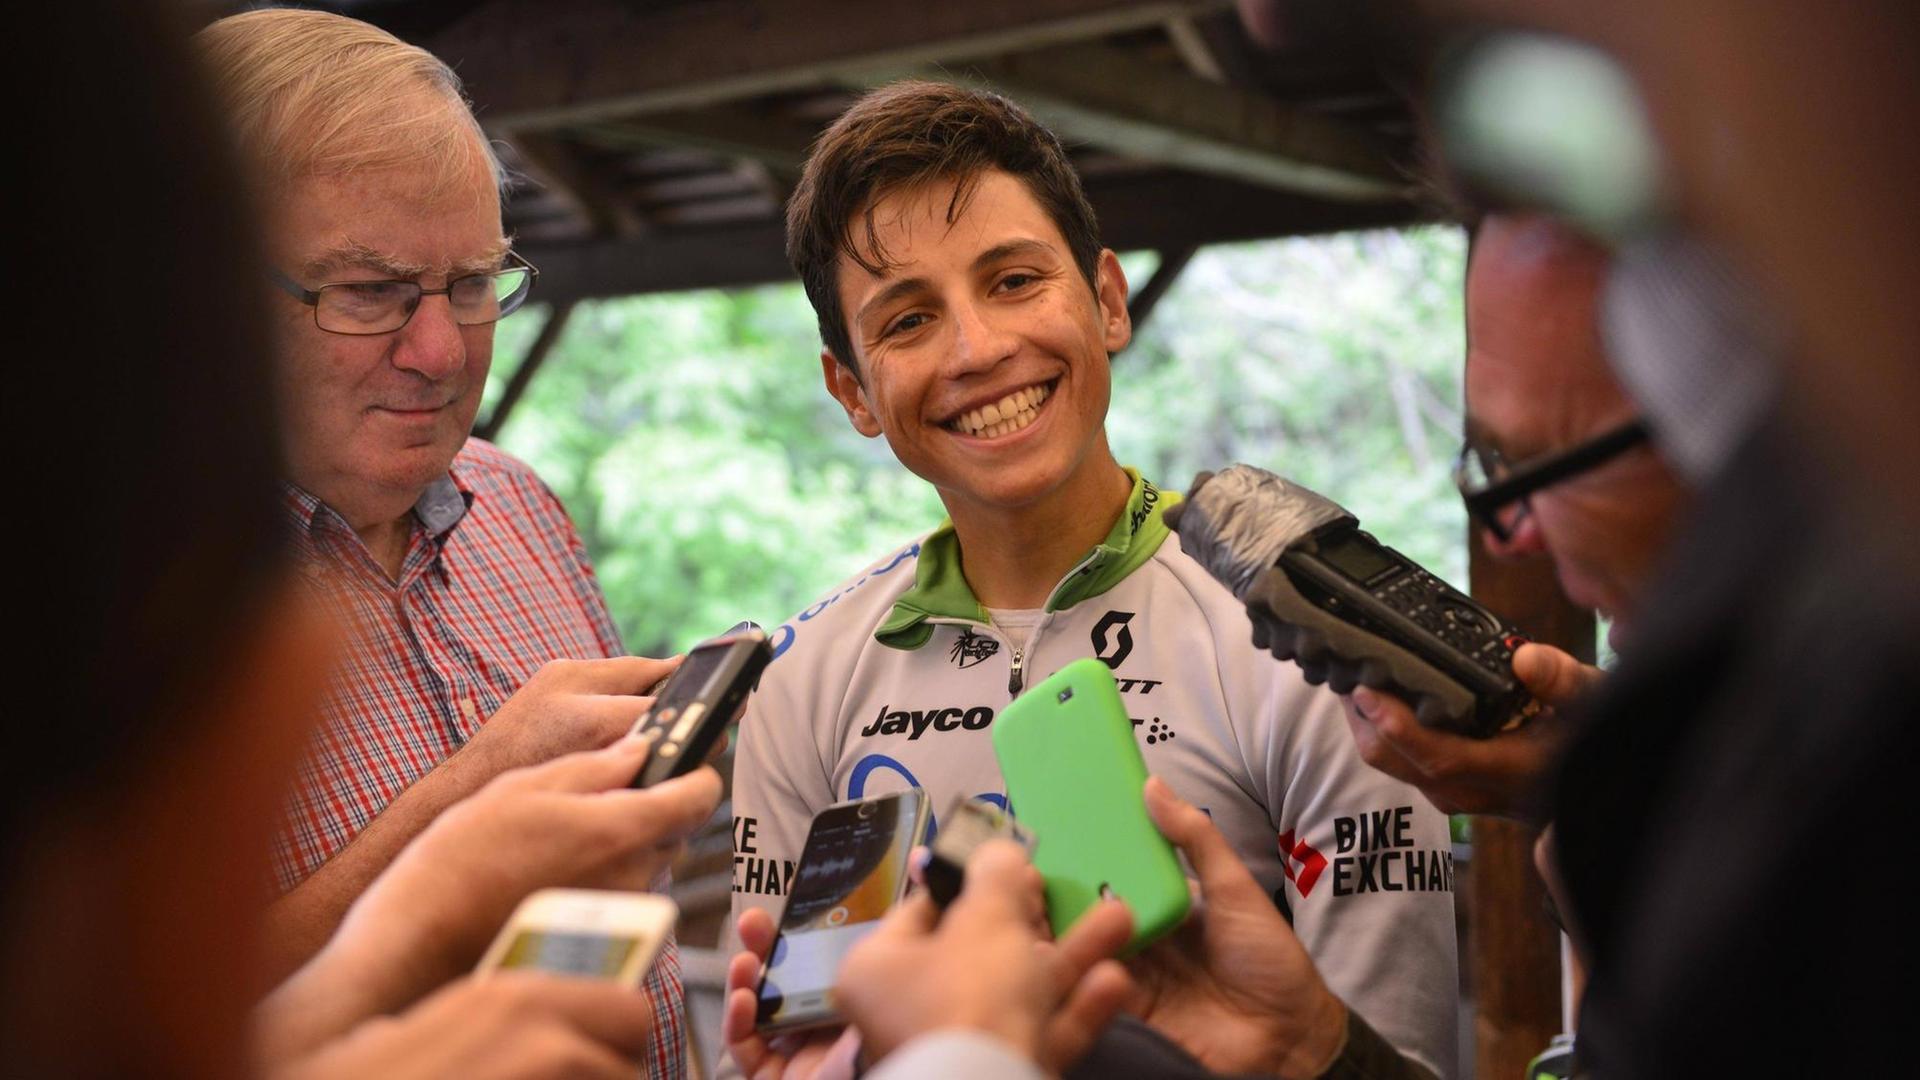 Der kolumbische Radsportler Esteban Chaves, umringt von Reportern, lächelt in die Kamera.